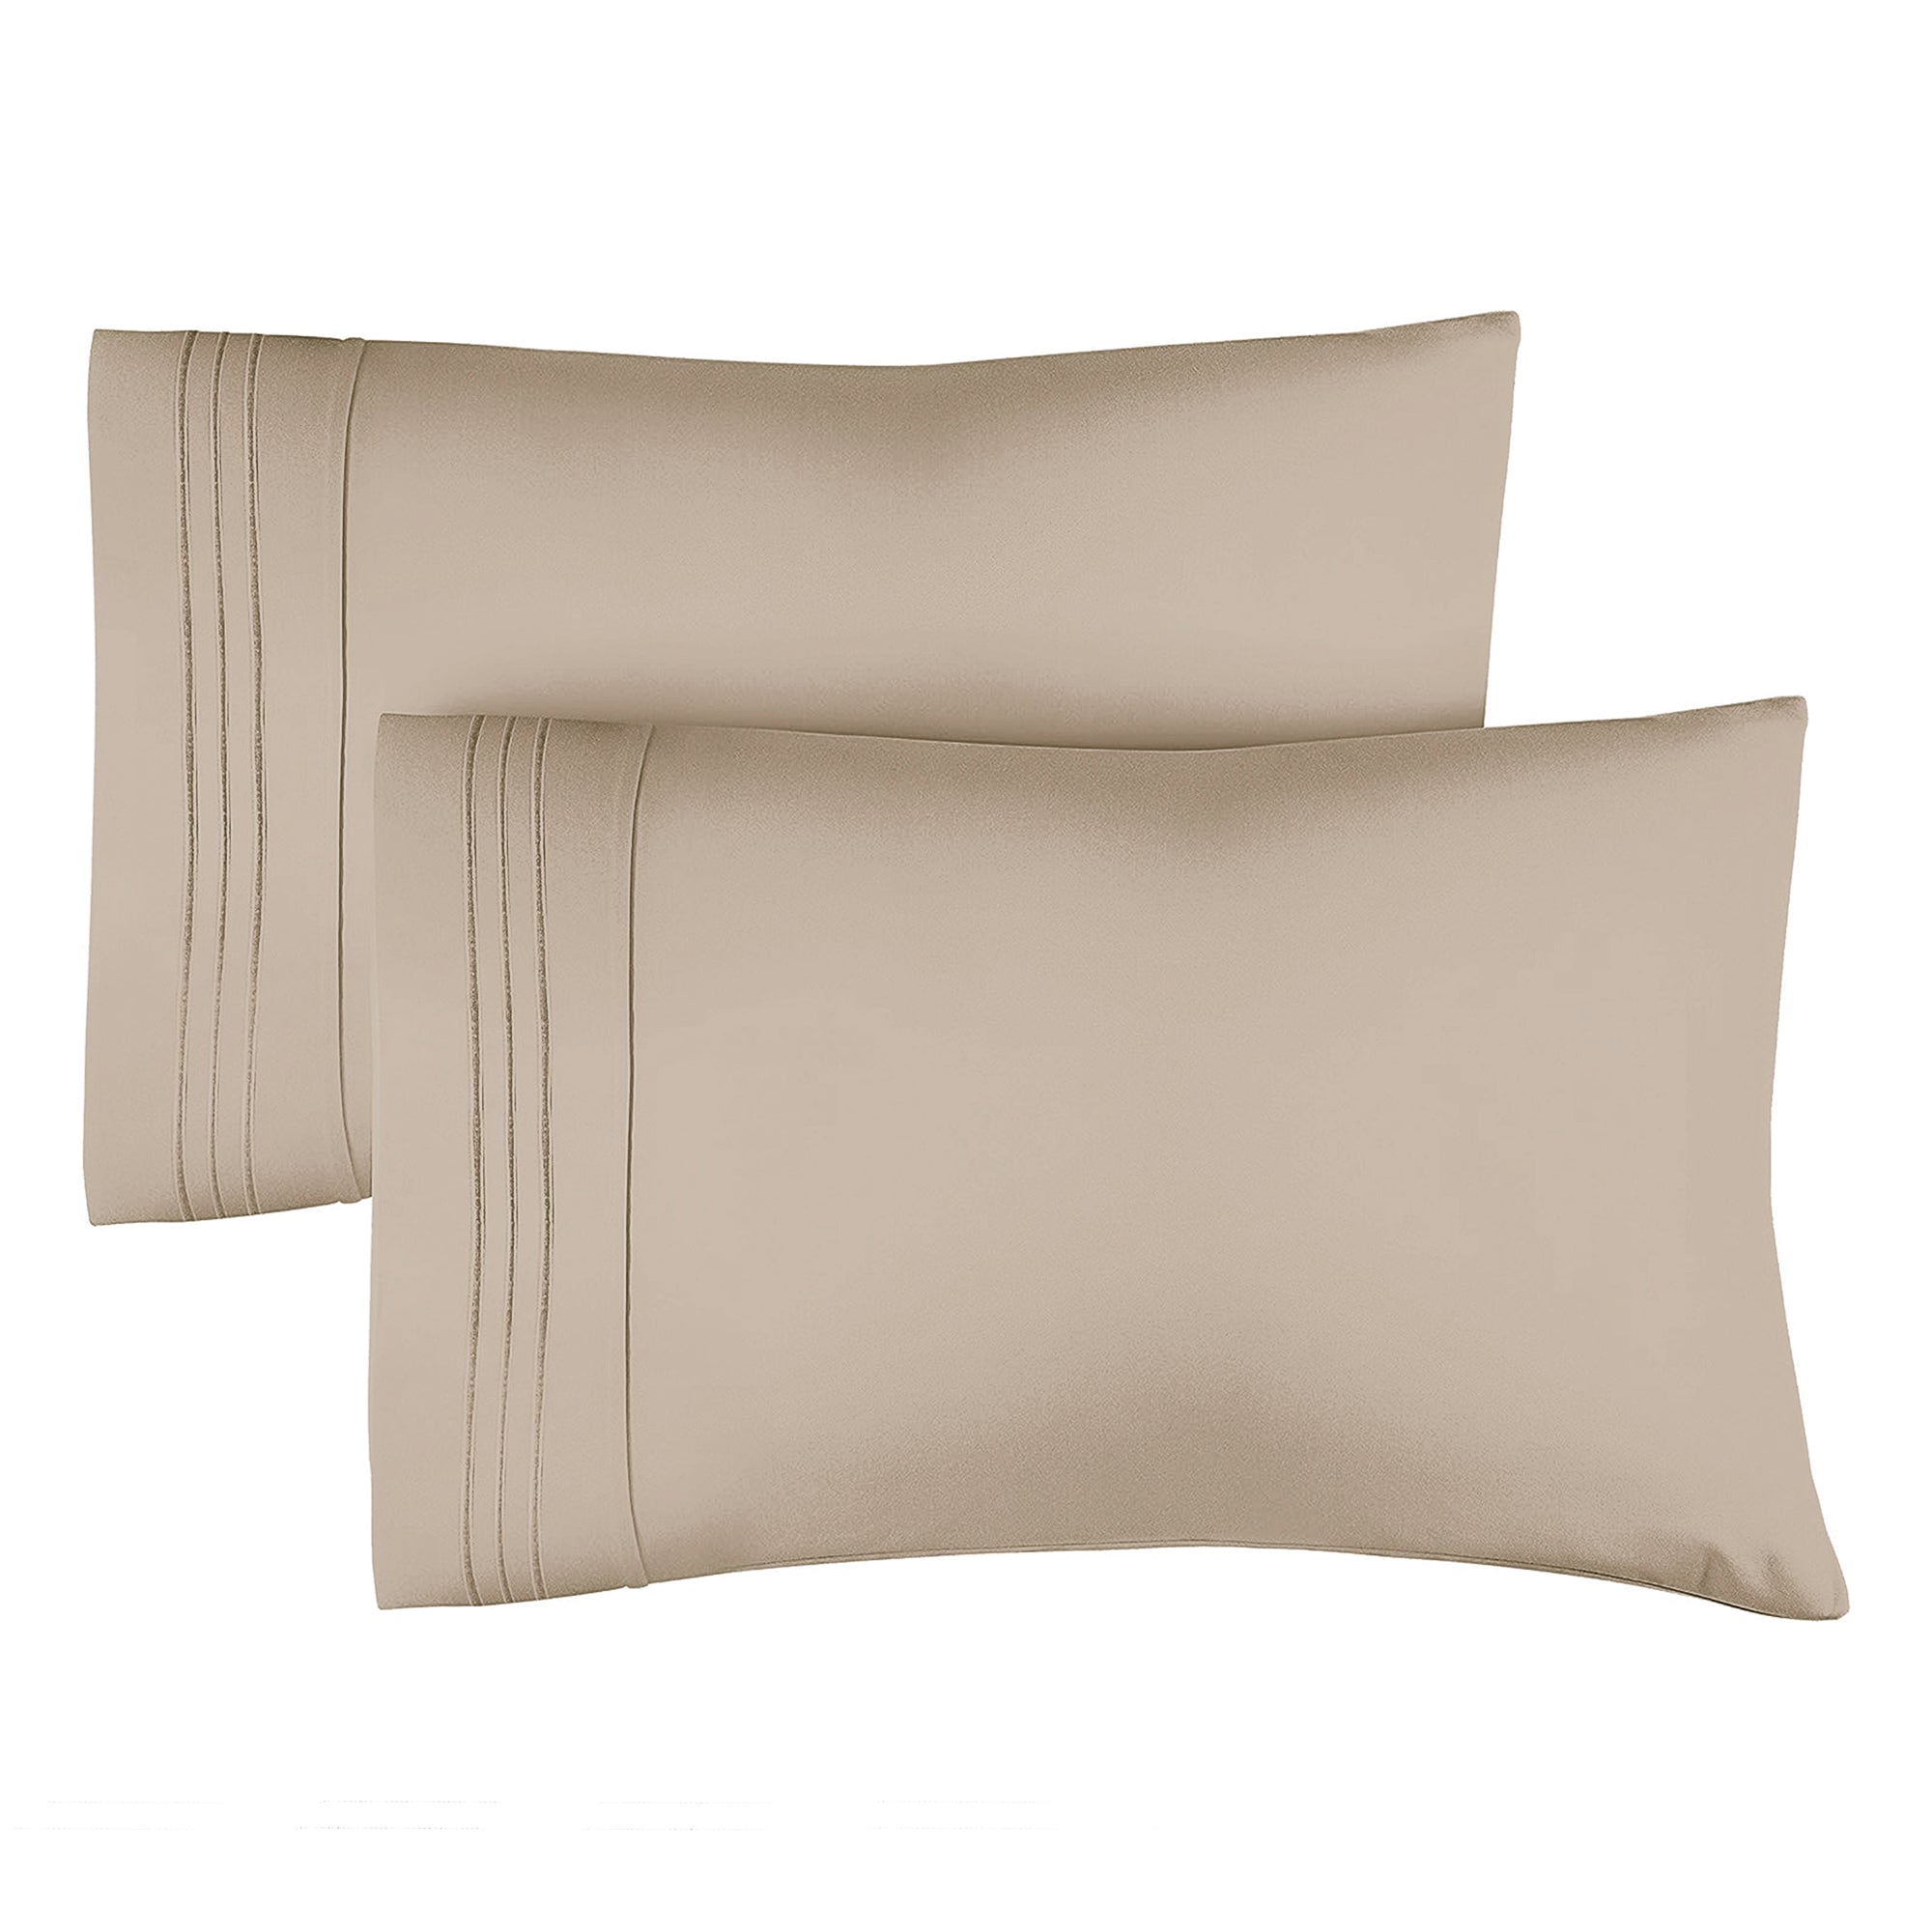 tes 2 Pillowcase Set - Wheat